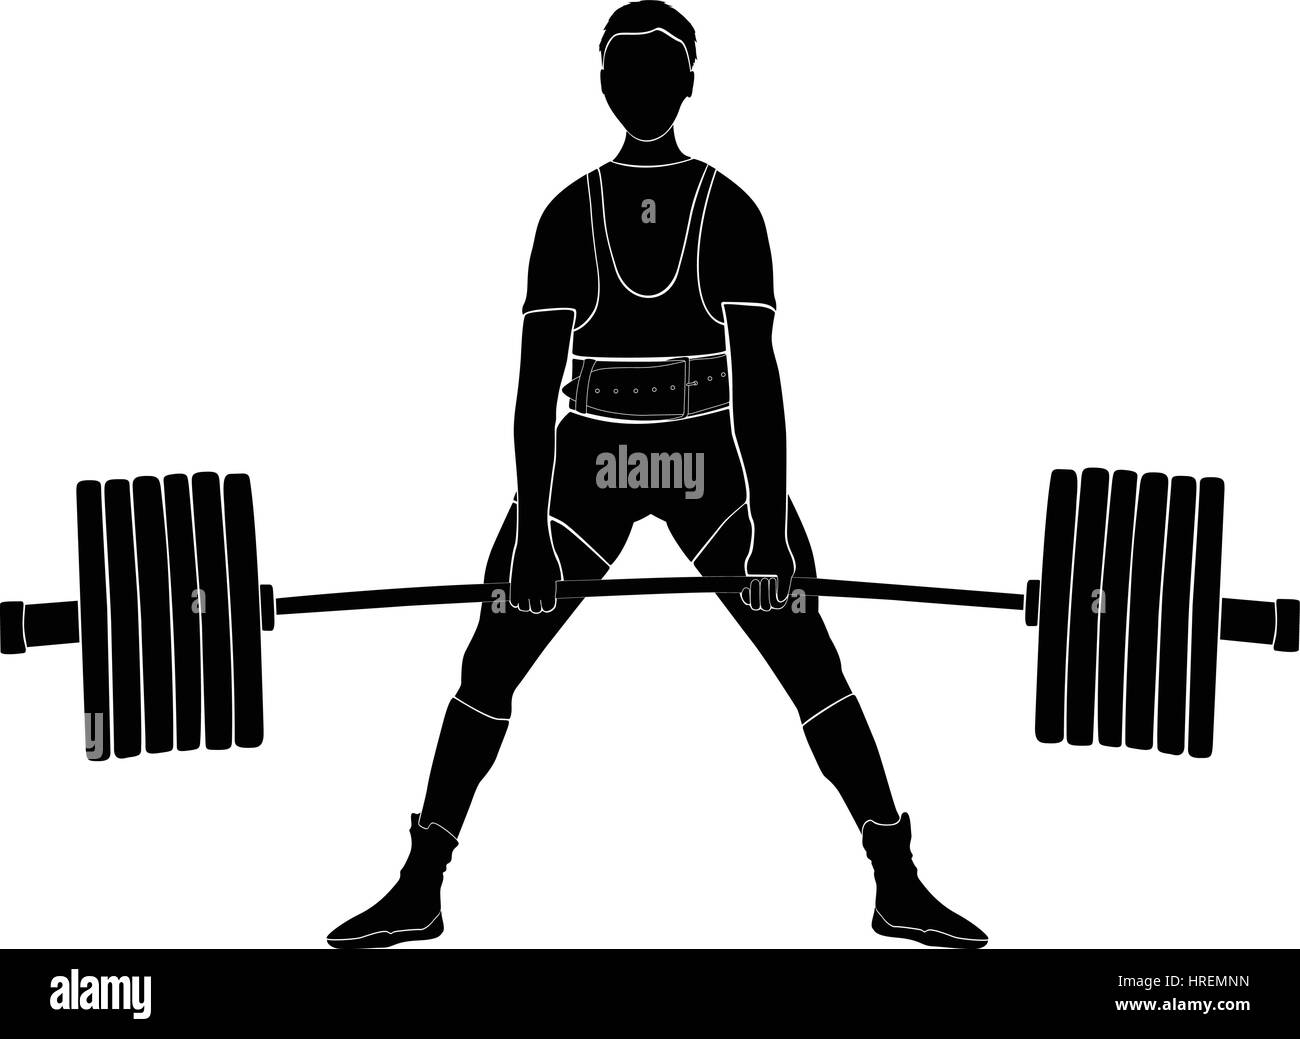 männlicher Athlet Powerlifter Kreuzheben im Kraftdreikampf schwarze silhouette Stock Vektor